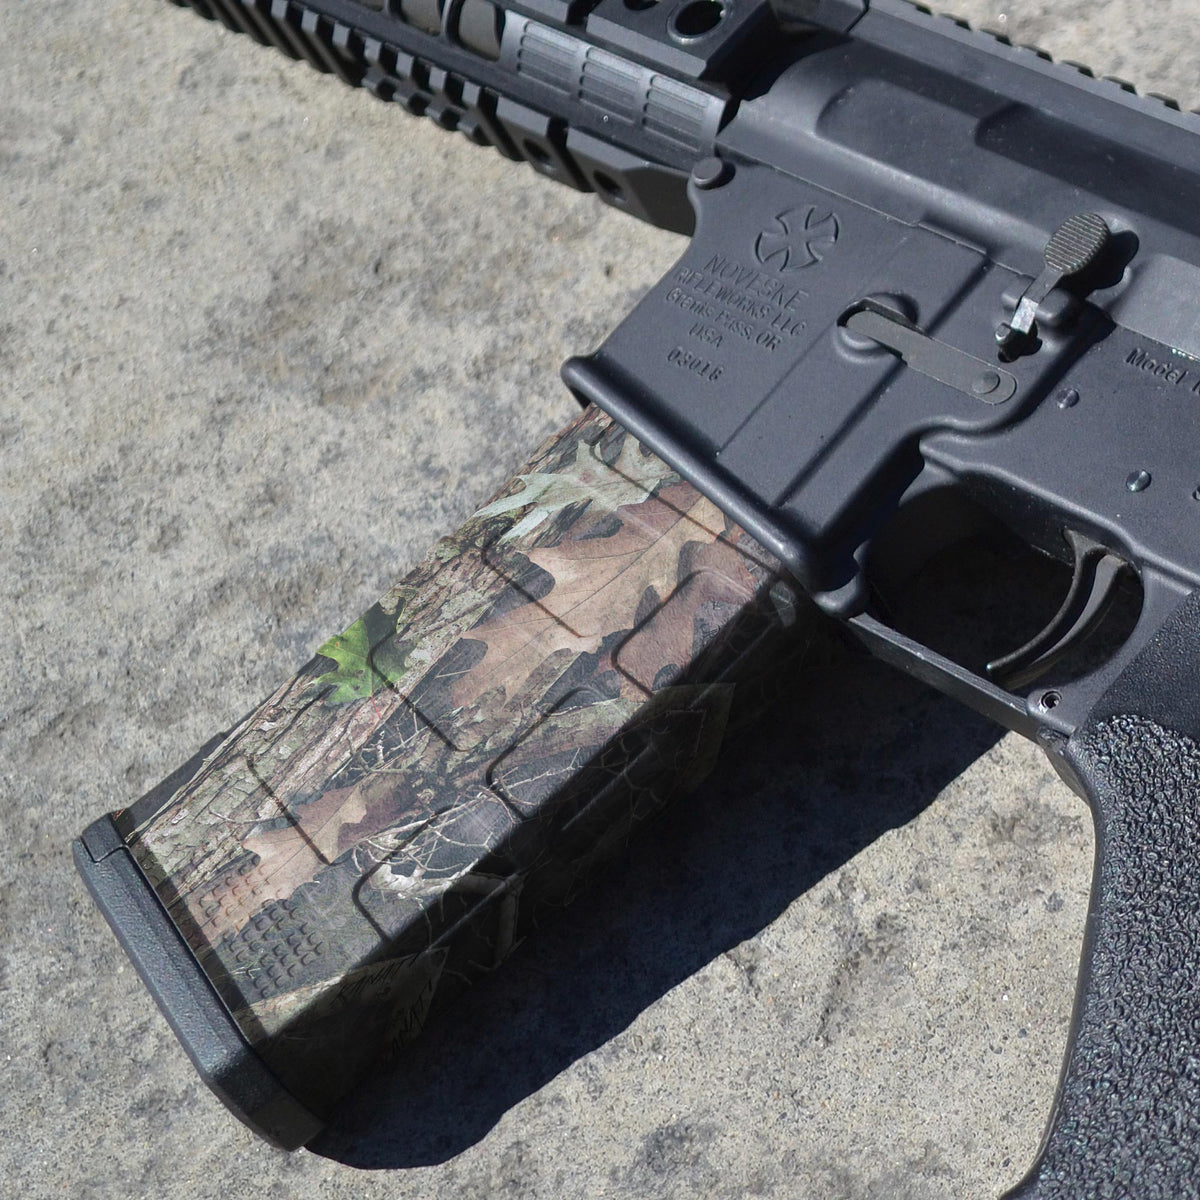 AR-15 Mag Skins - 3 Pack (Camo)